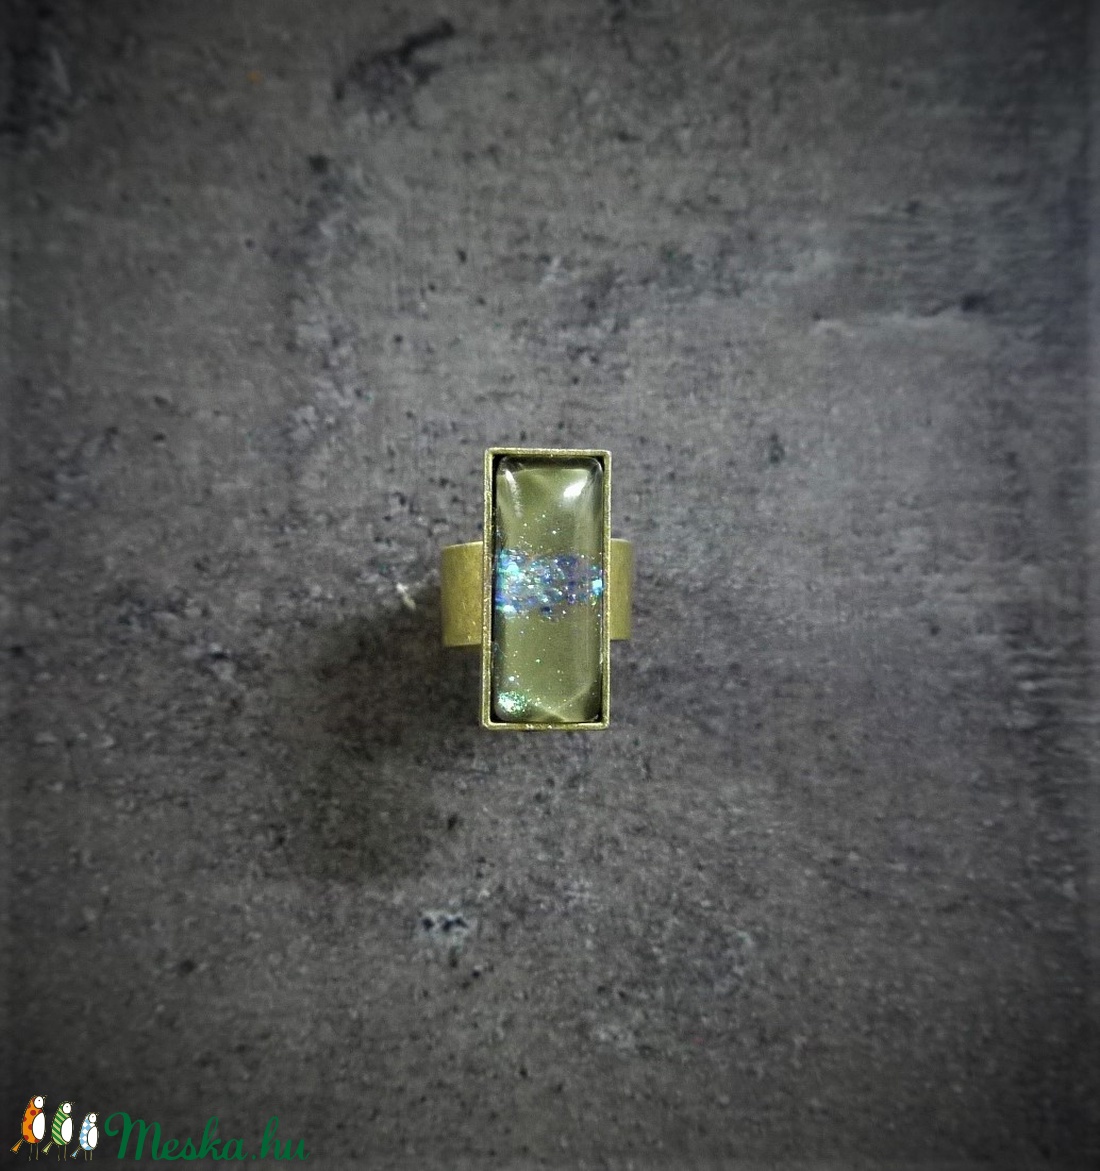 Festett üveg gyűrű (2,5x1 cm) - INGYEN POSTA - ékszer - gyűrű - üveglencsés gyűrű - Meska.hu